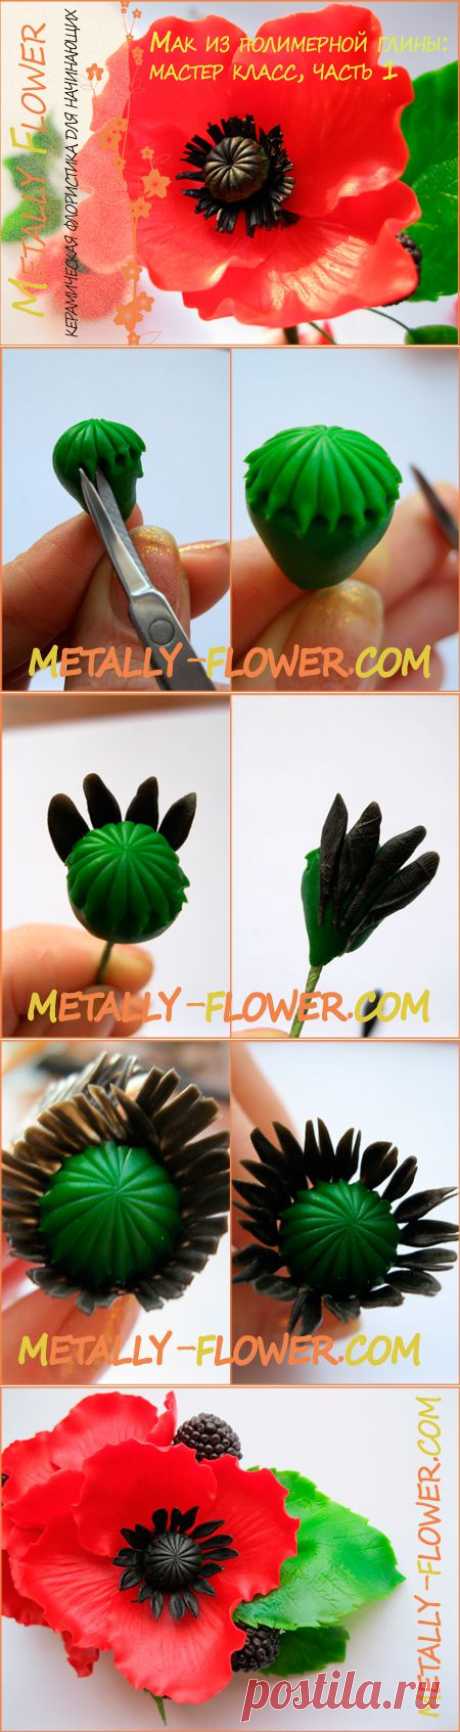 МК: мак из полимерной глины, часть 1 | Metally Flower